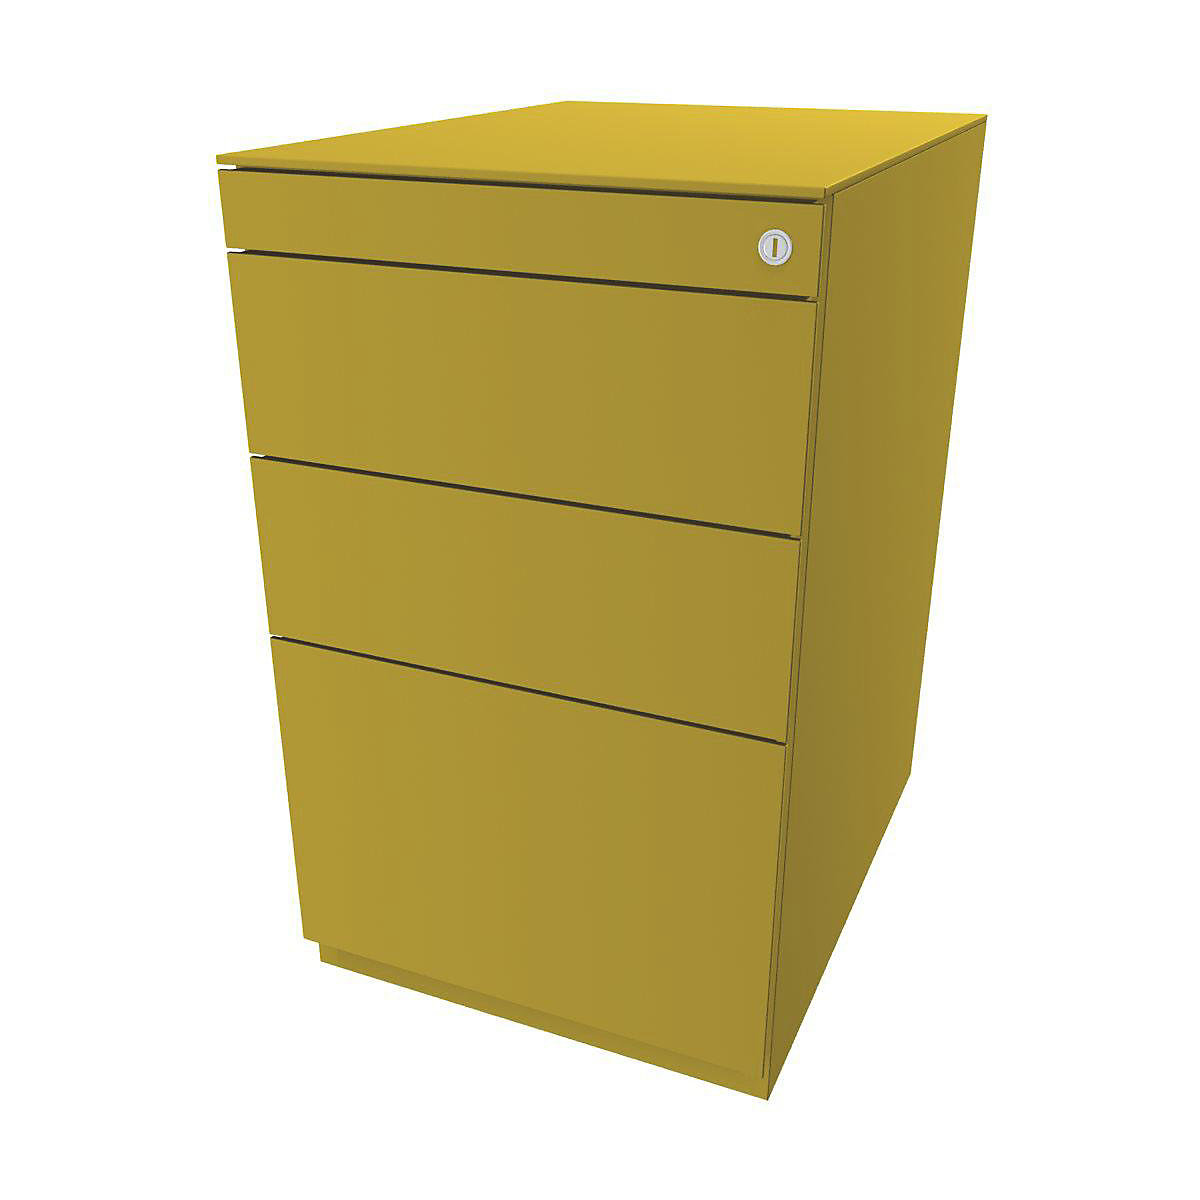 Stojaci kontajner Note™, s 2 univerzálnymi zásuvkami, 1 závesná registratúra – BISLEY, s hornou doskou 565 mm, žltá-7